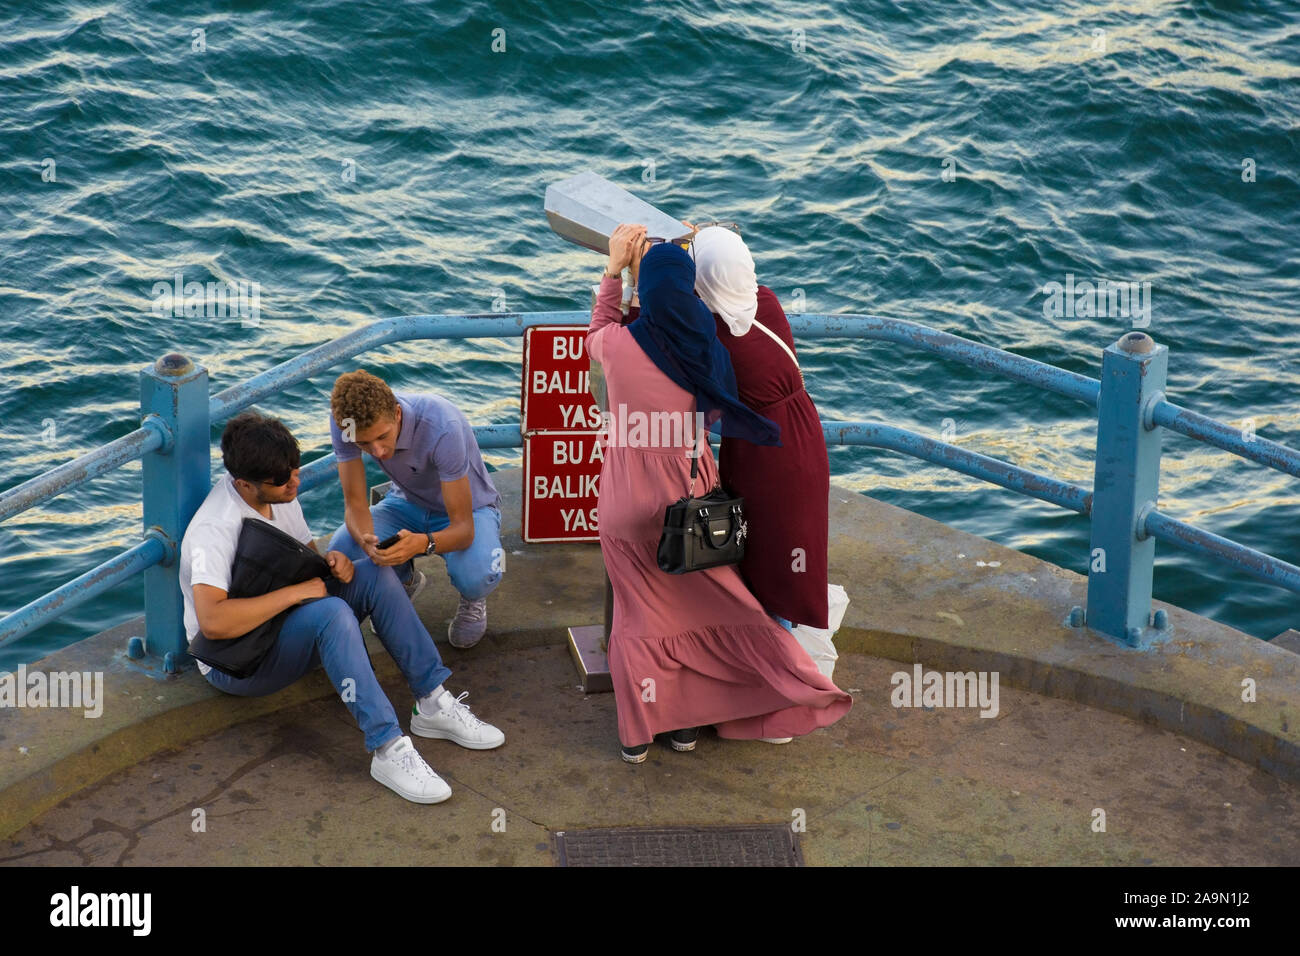 Istanbul, Turquie - 6 septembre 2019. Les touristes sur une plate-forme d'observation sur le pont de Galata Istanbul regarder à travers les jumelles de visualisation Banque D'Images